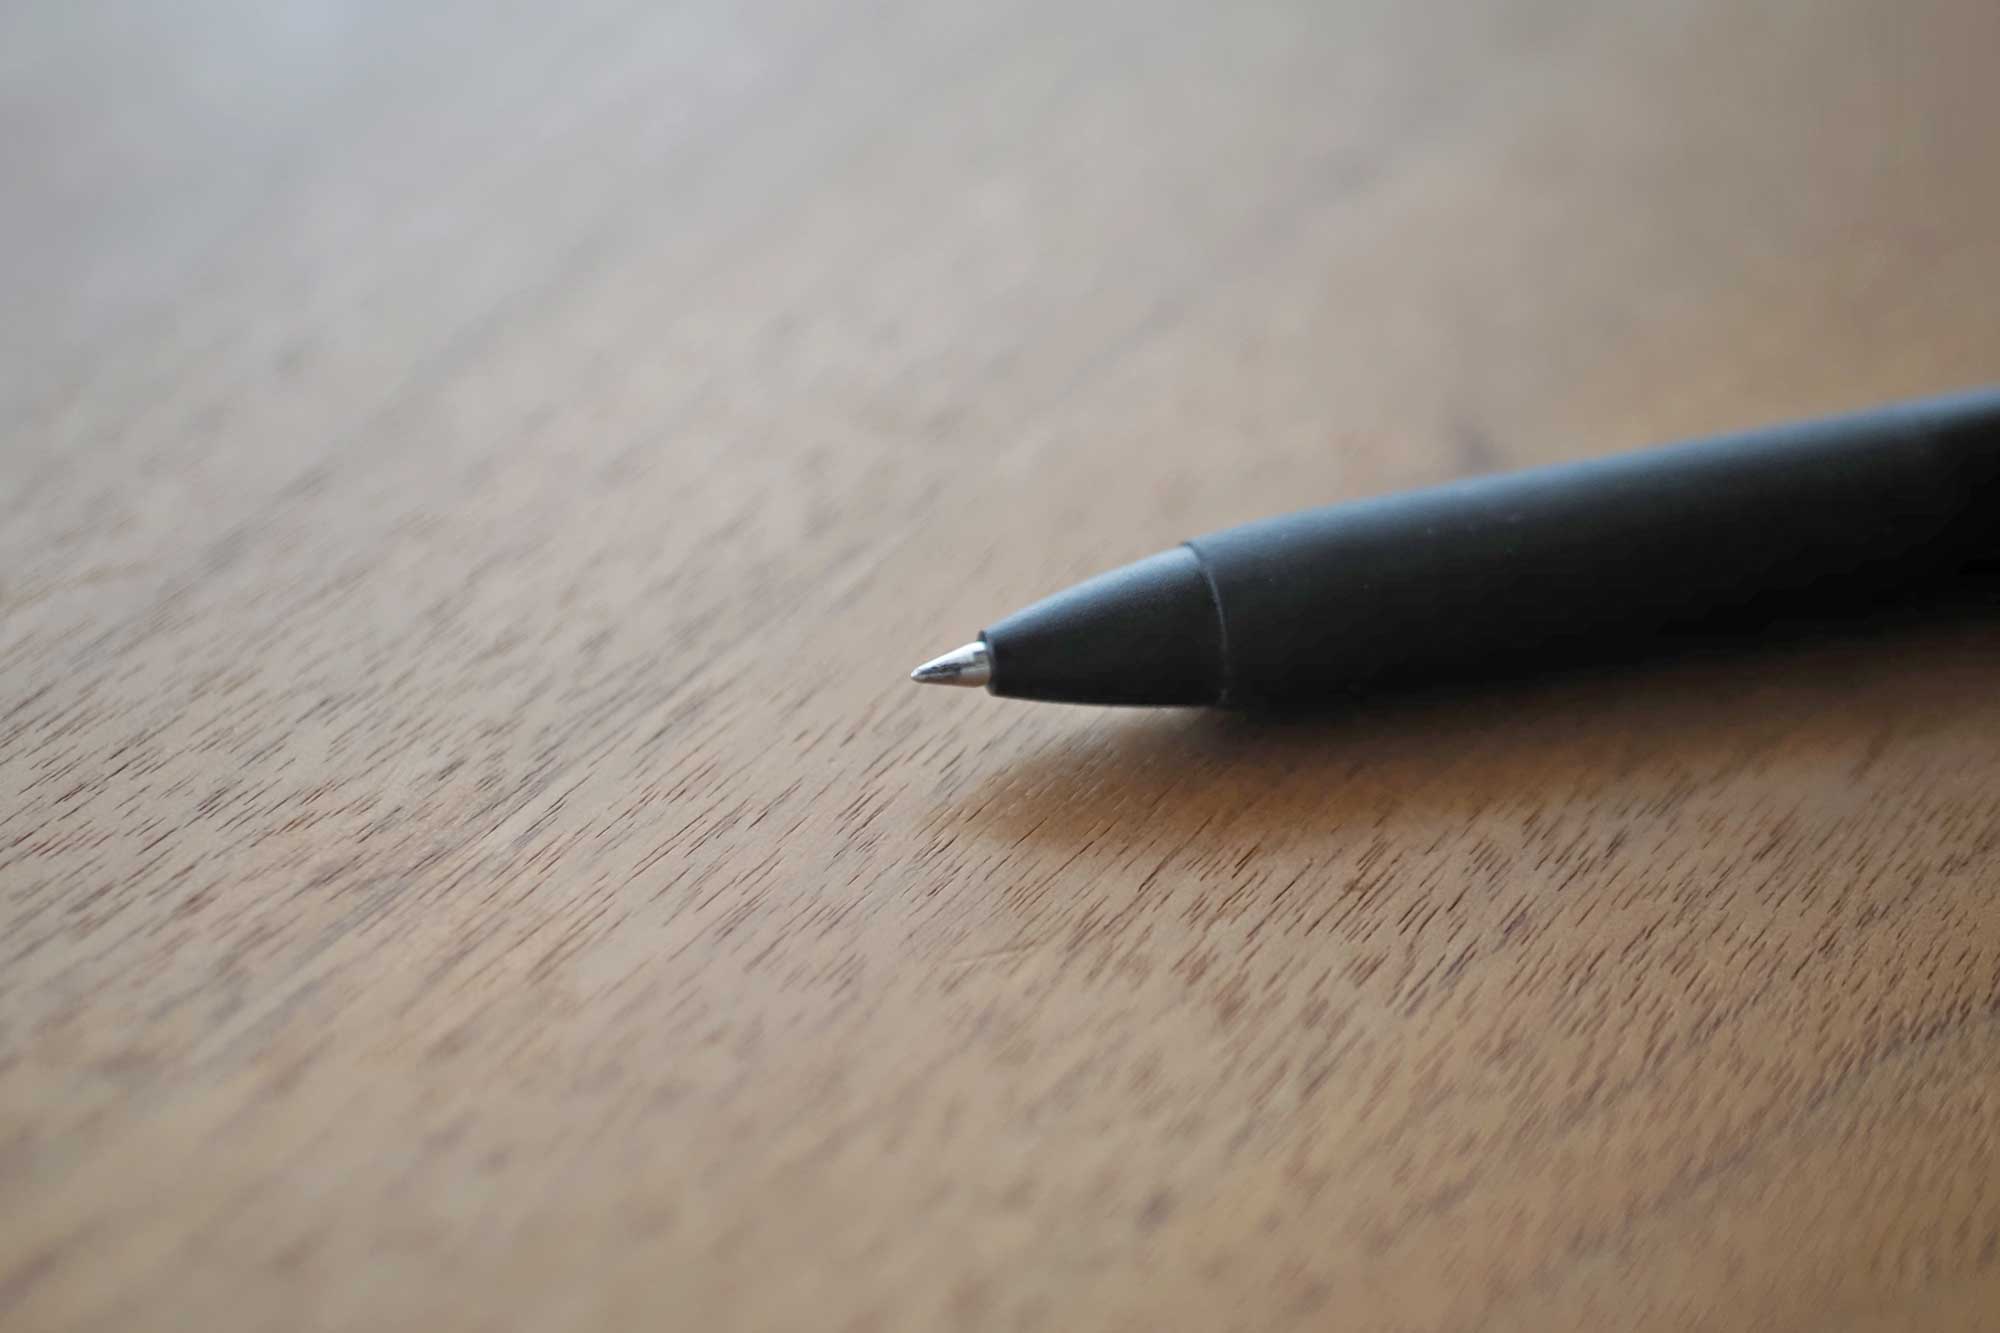 ボールペン,三菱鉛筆,ペン,uni,ball,書きやすい,裏写り,軽い,ペン先